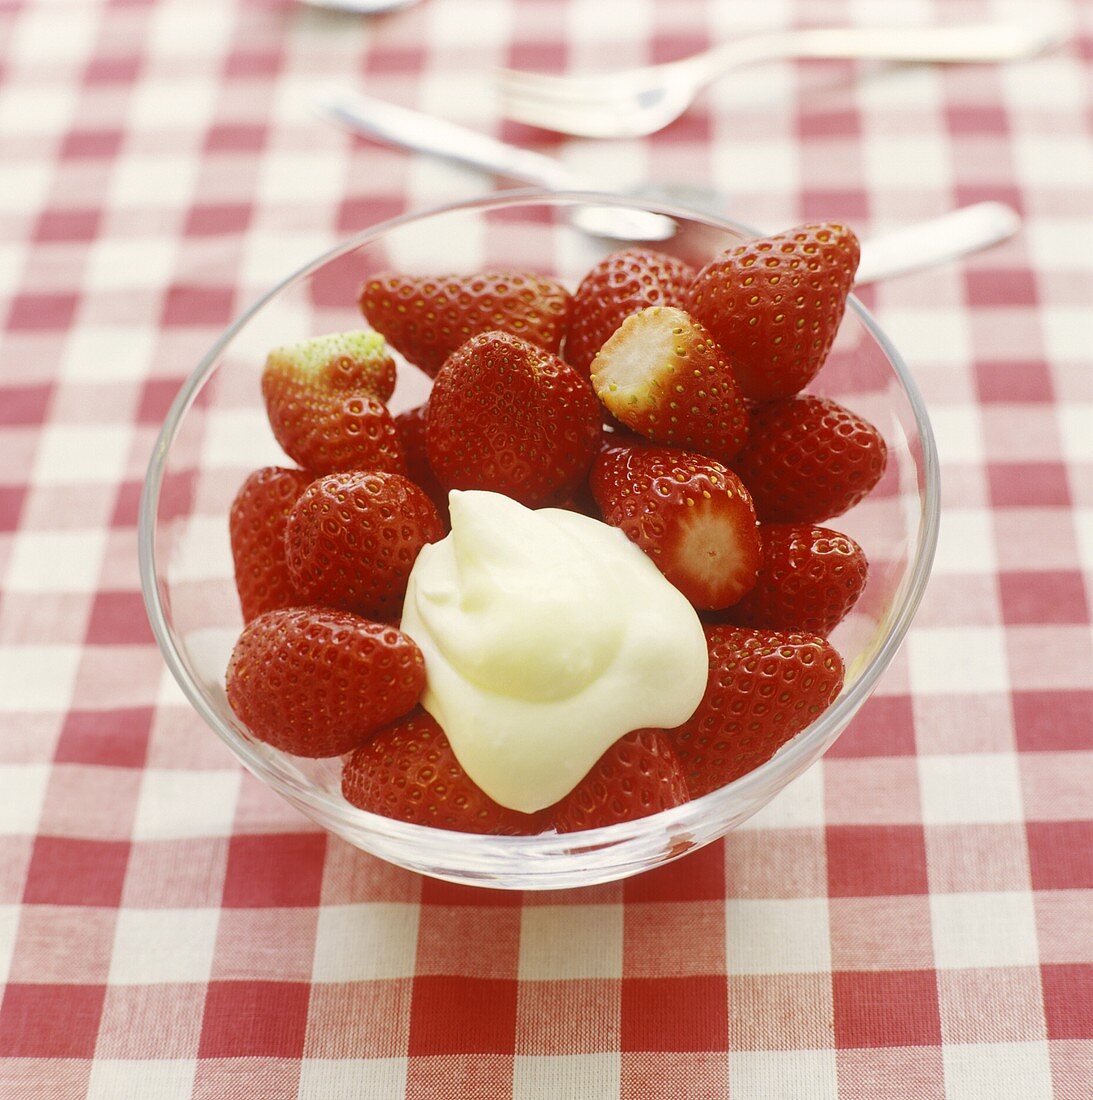 Fresh strawberries with vanilla cream